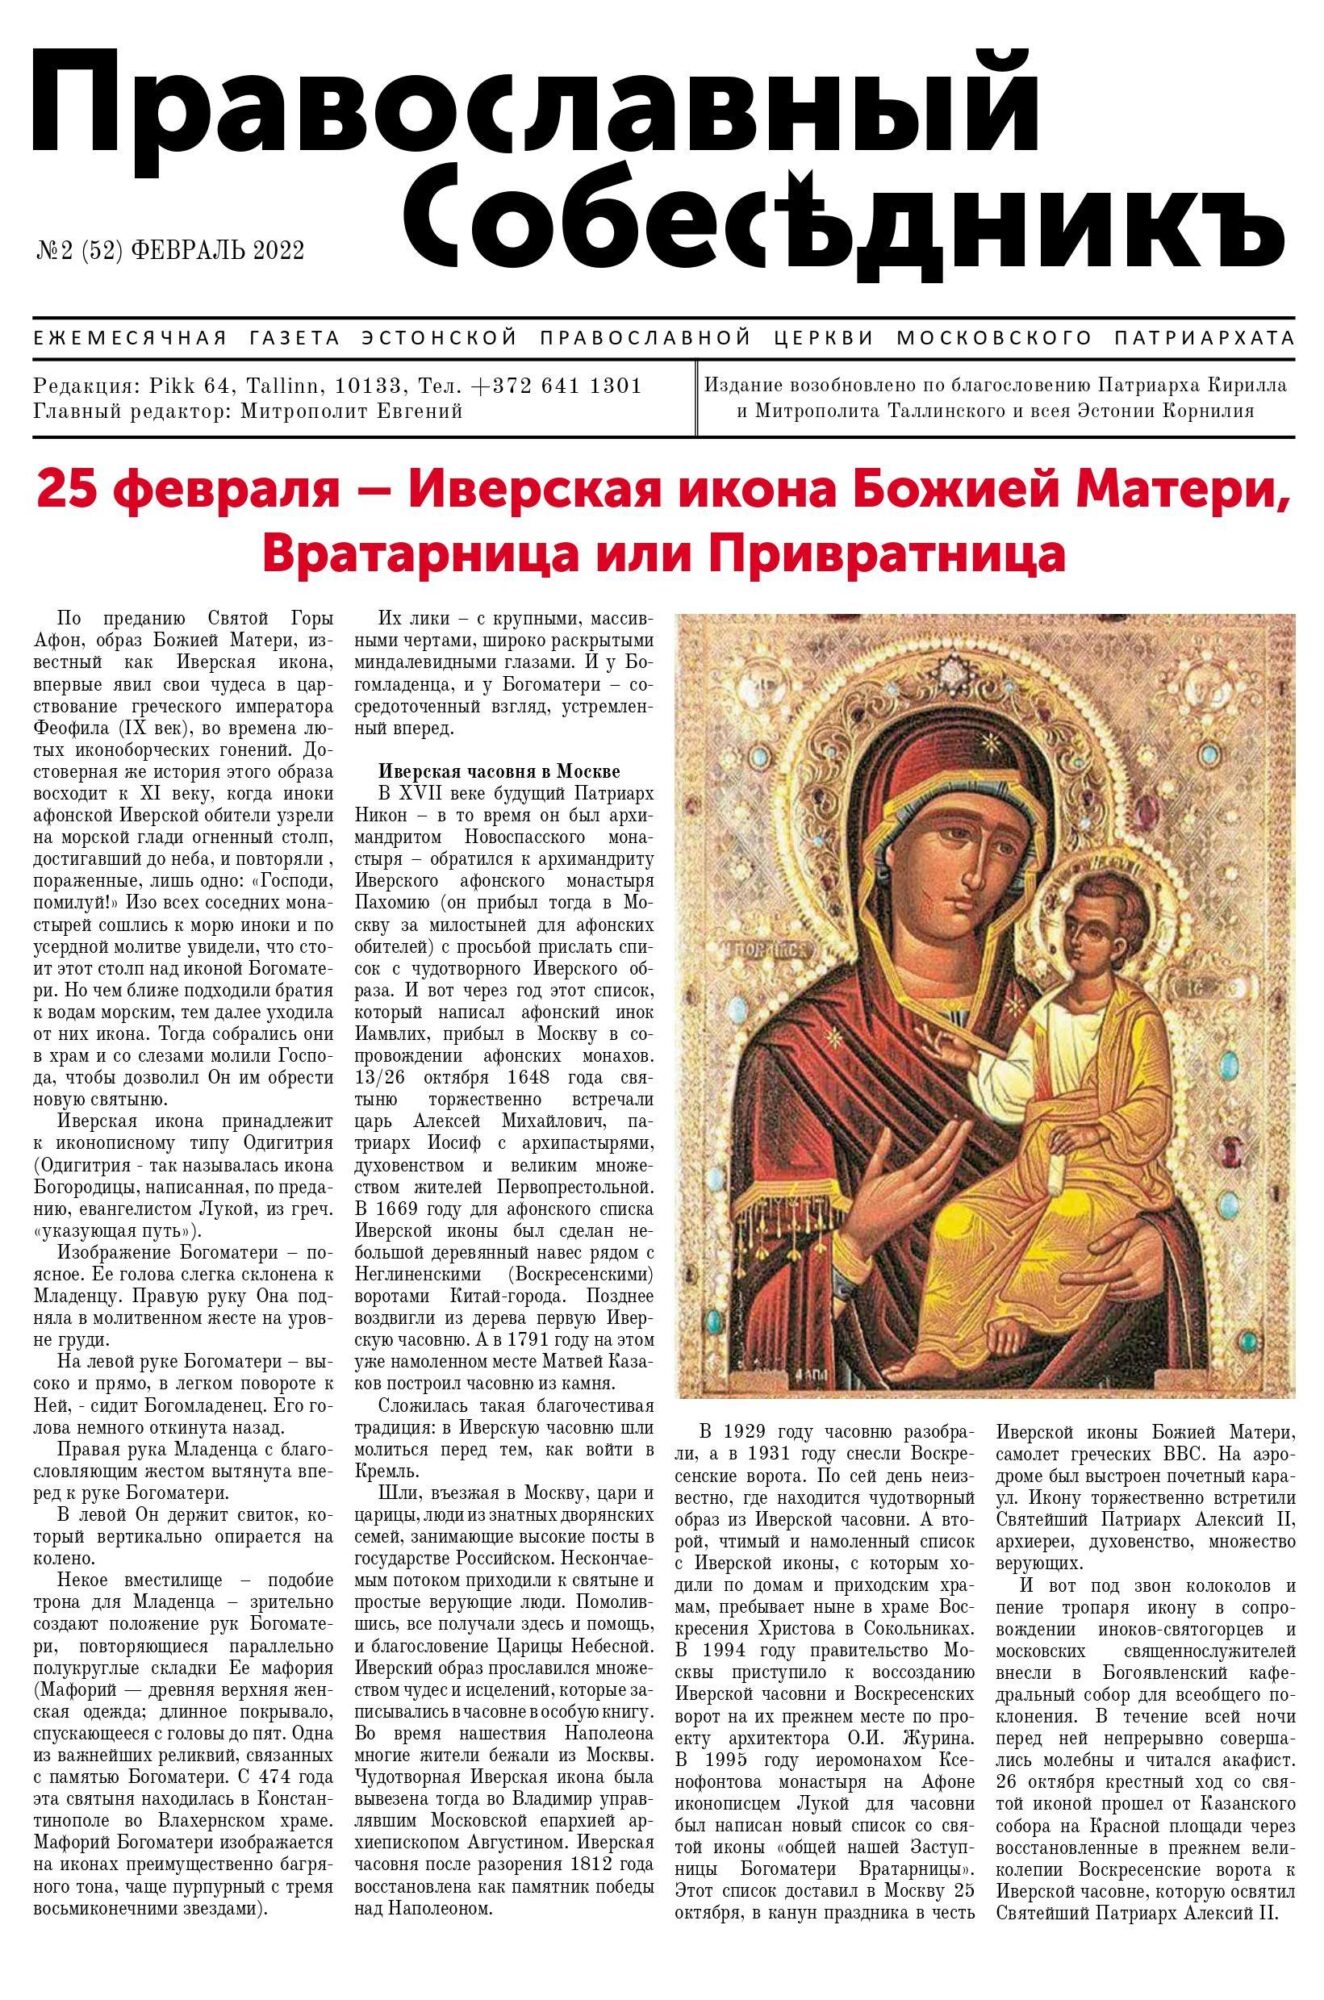 Православный Собеседник, февраль 2022. Обложка